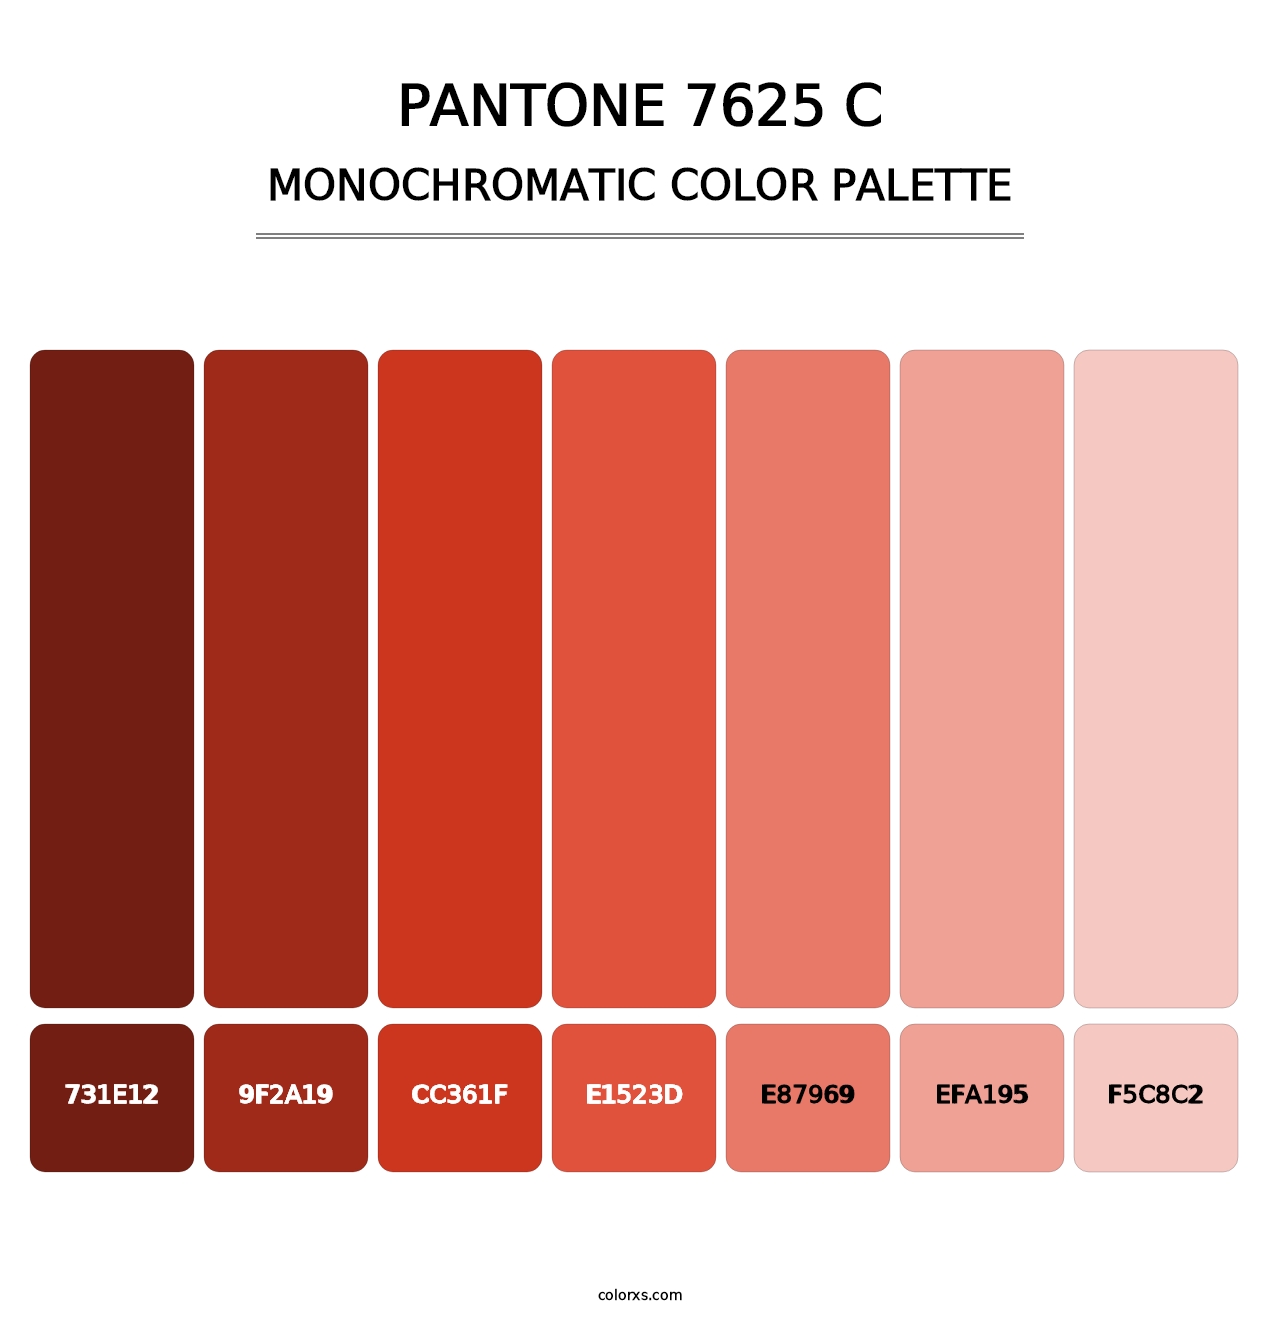 PANTONE 7625 C - Monochromatic Color Palette